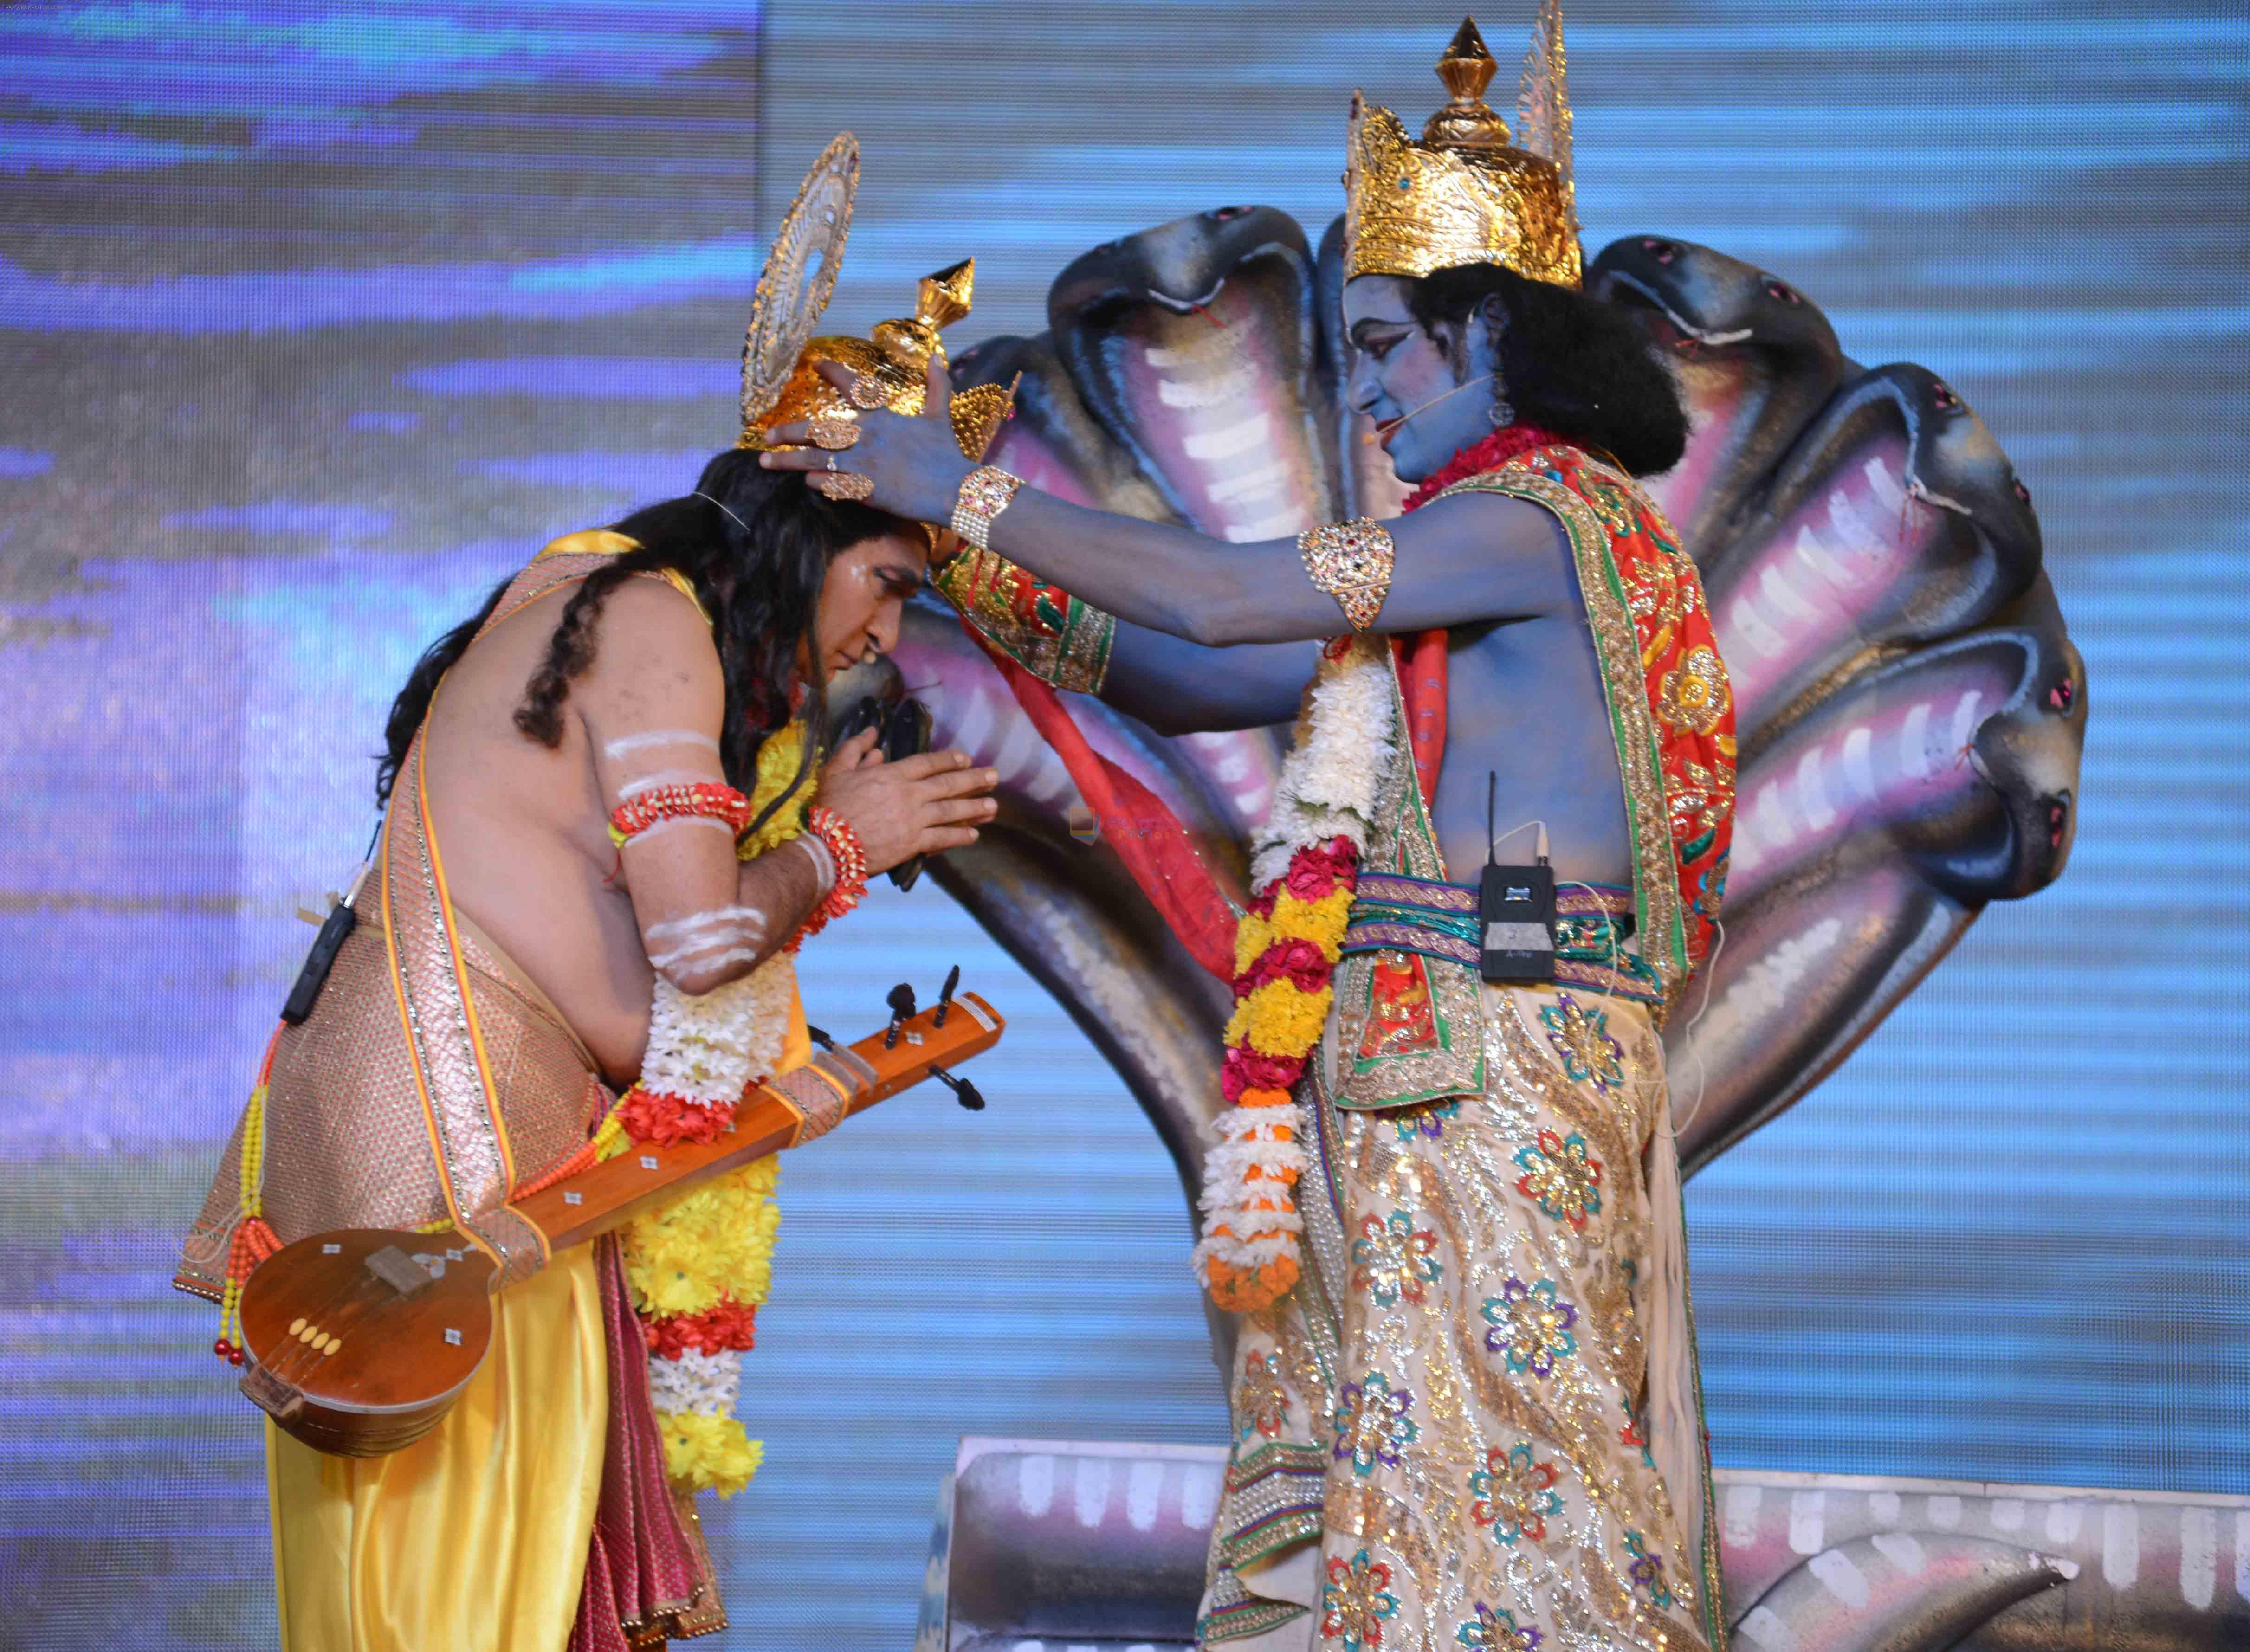 Asrani -Narad Munni & Vishnu Playing the Ram leela at Luv Kush ram Leela committee at Lal Qila maidan in Delhi on 13th Oct 2015